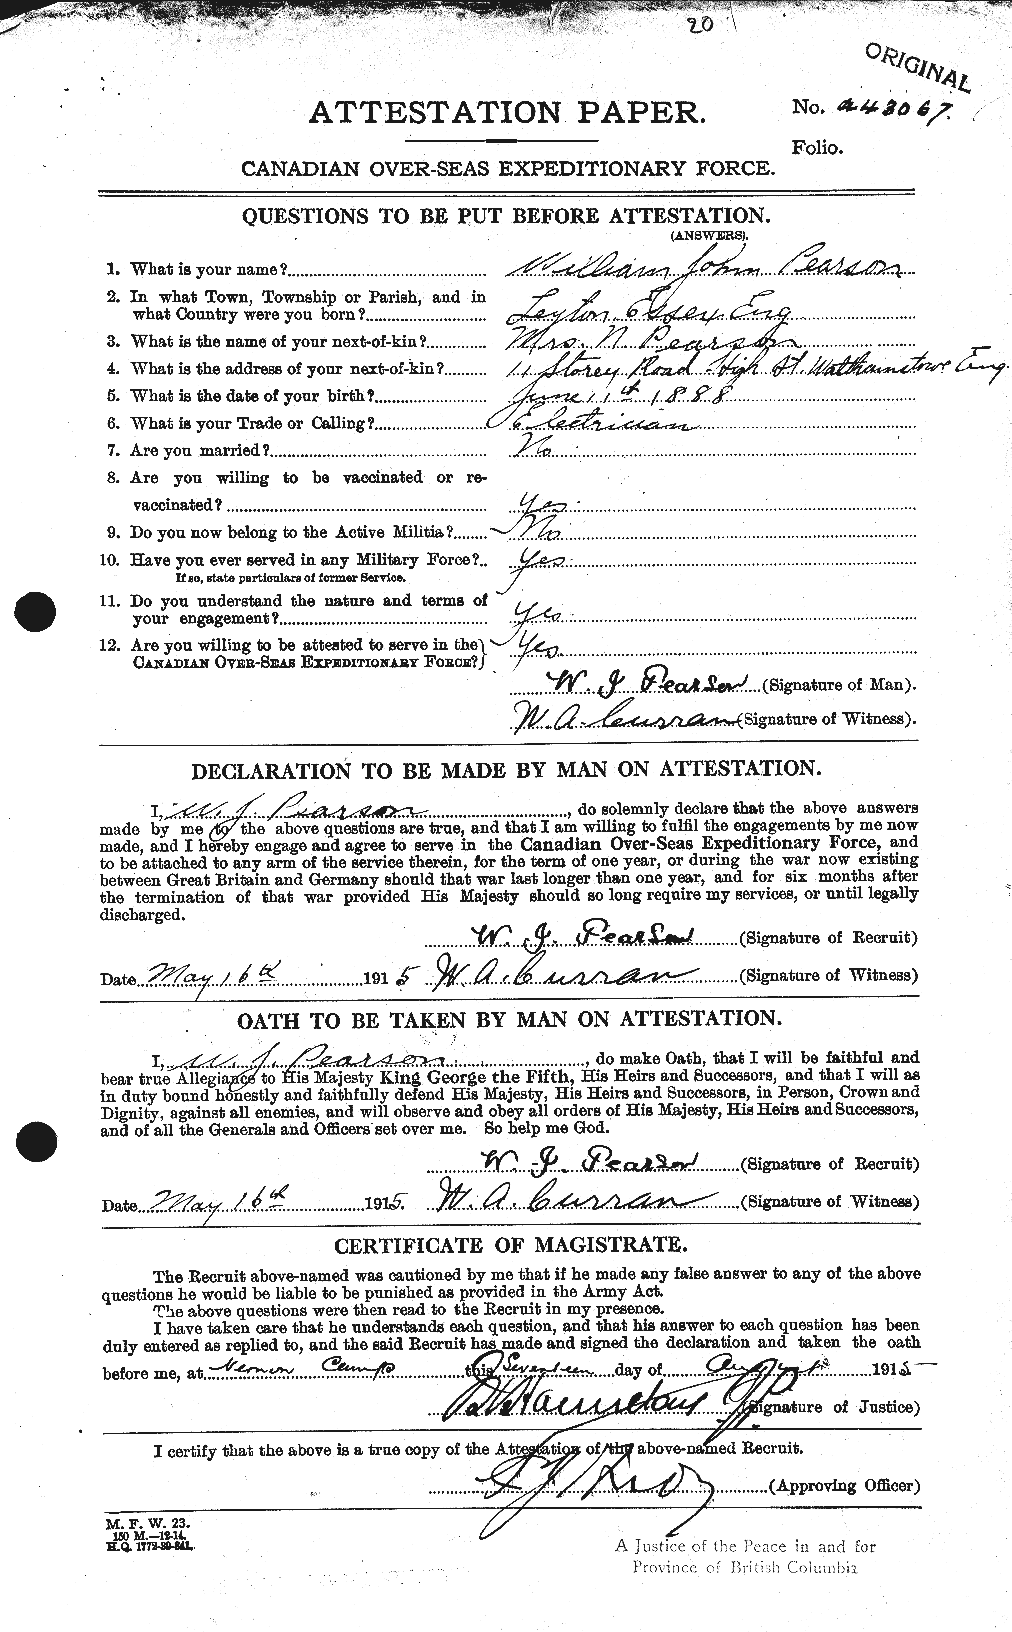 Dossiers du Personnel de la Première Guerre mondiale - CEC 570775a